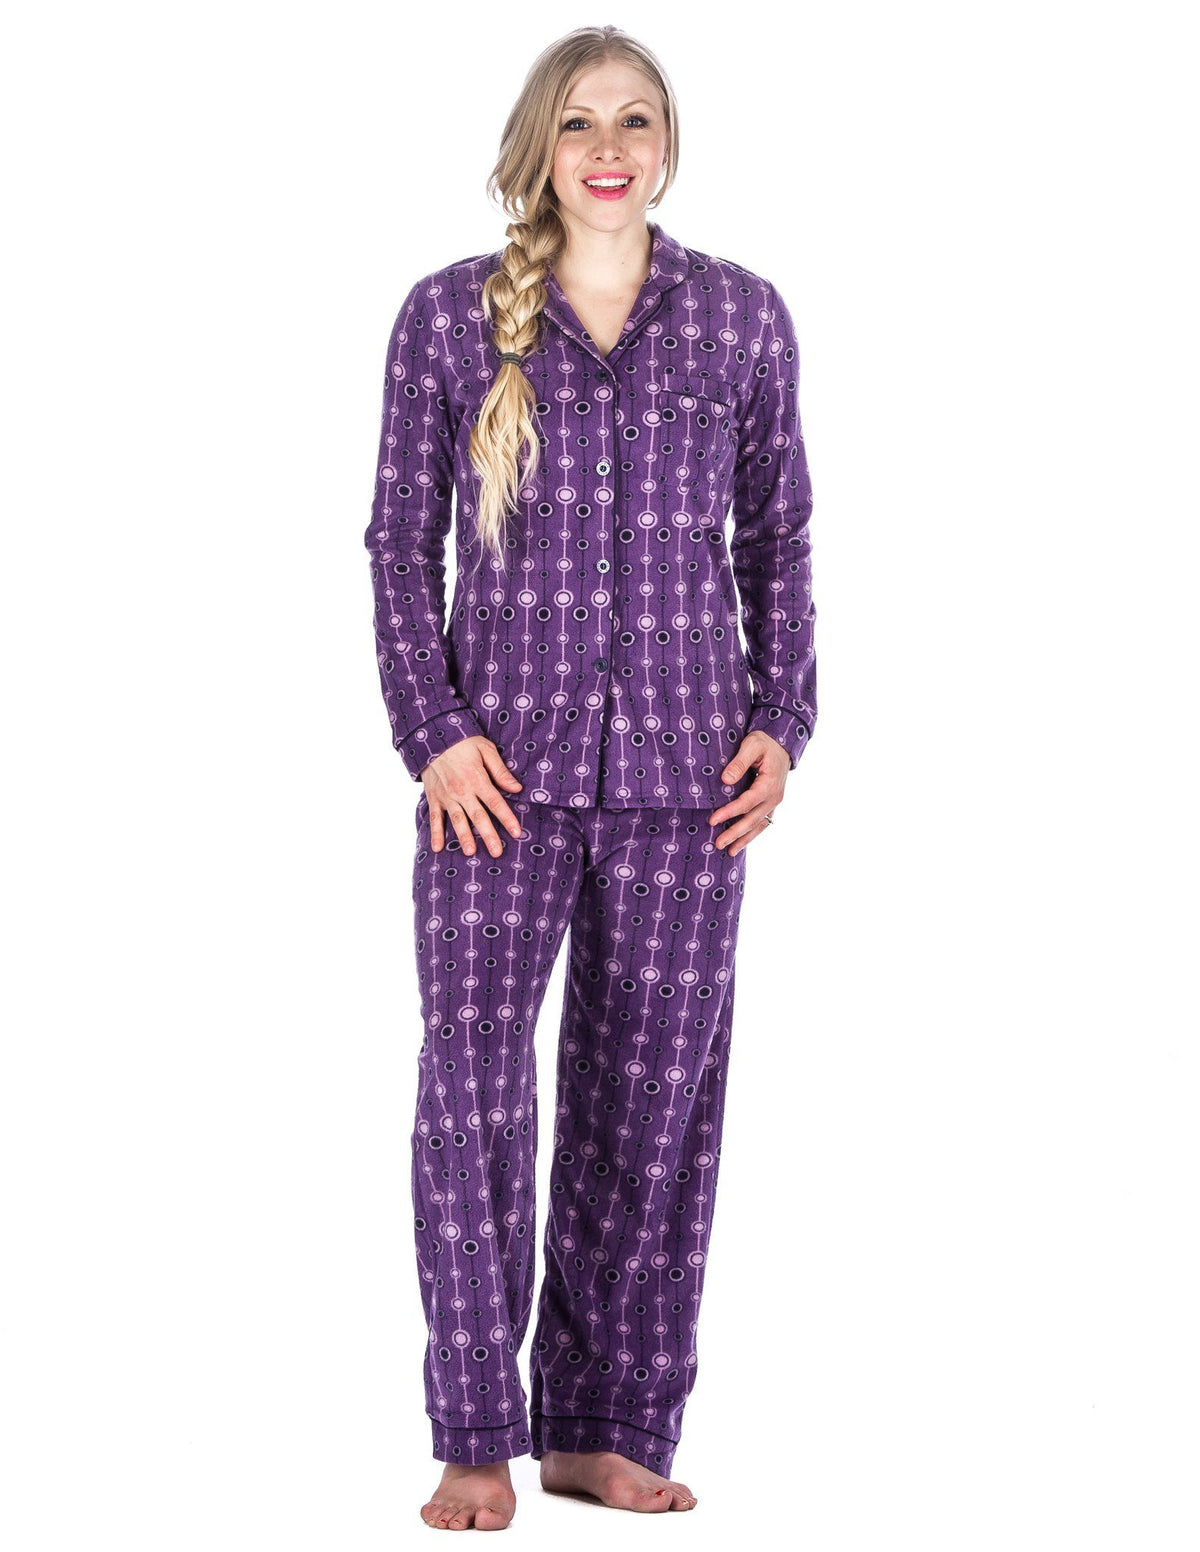 Box Packaged Women's Microfleece Pajama Sleepwear Set - Bubbles - Purple